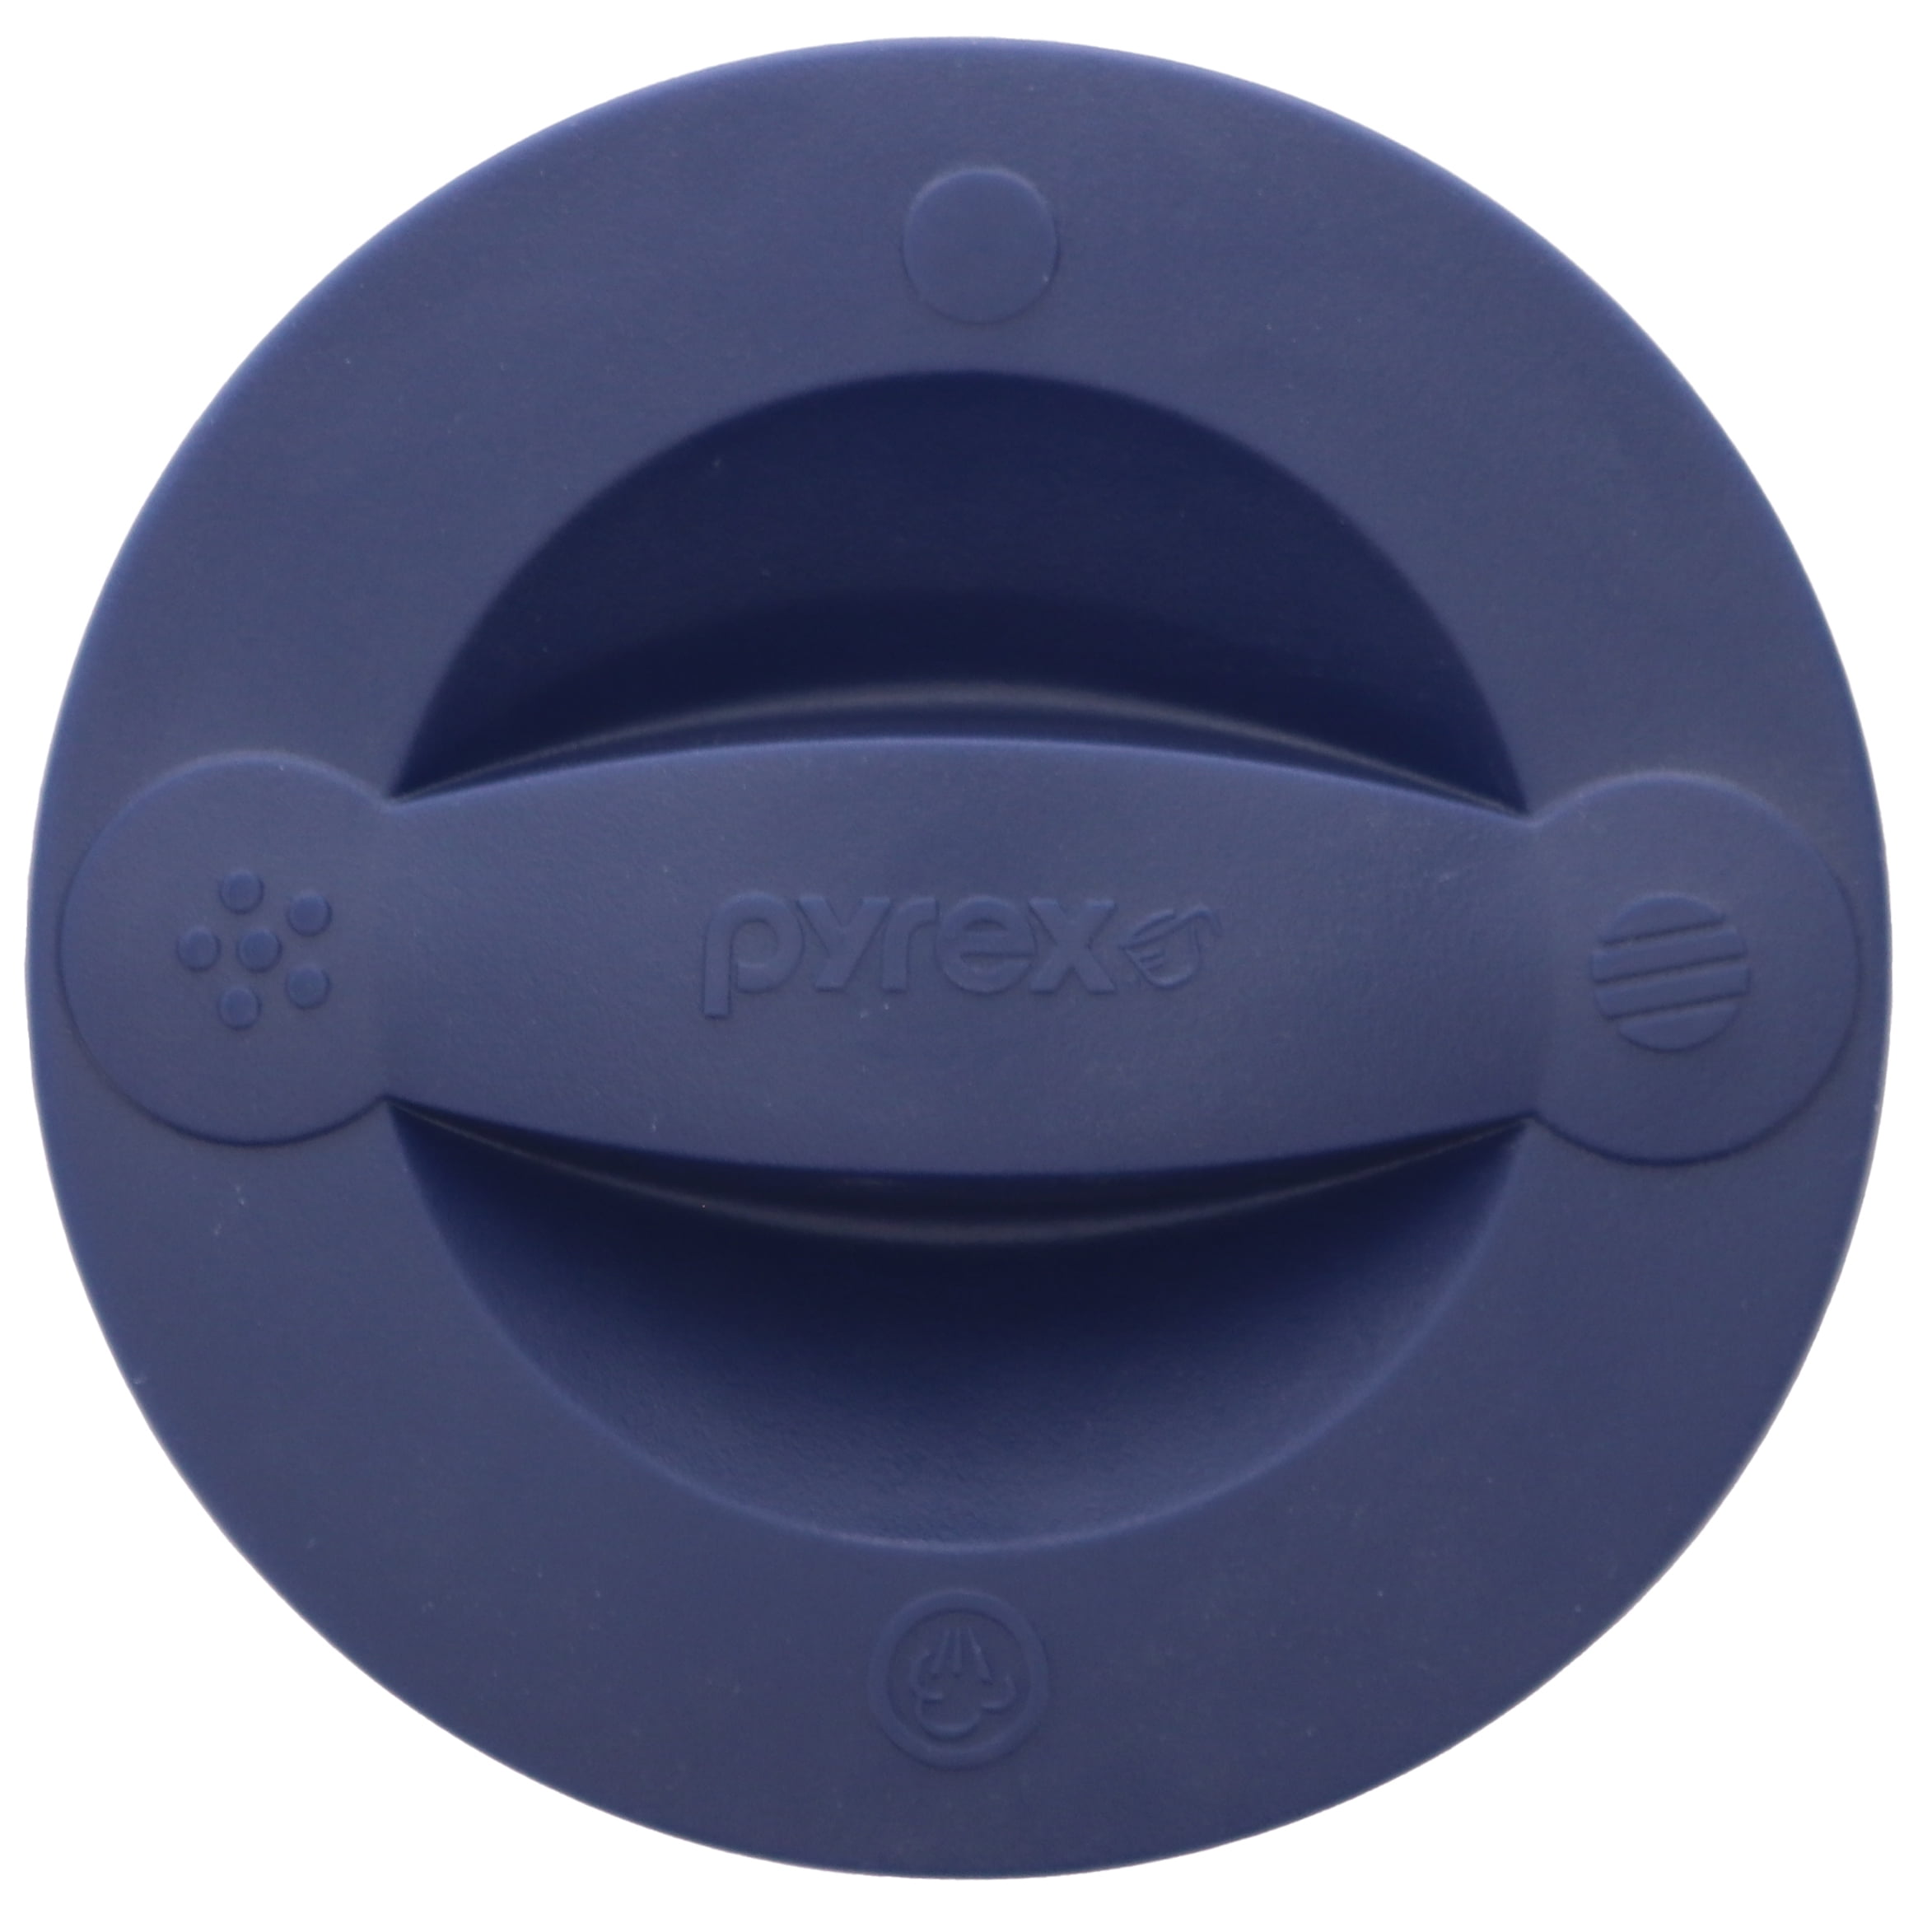 Pyrex 516-RRD-PC 2-Cup Adriatic Blue Measuring Cup Lid